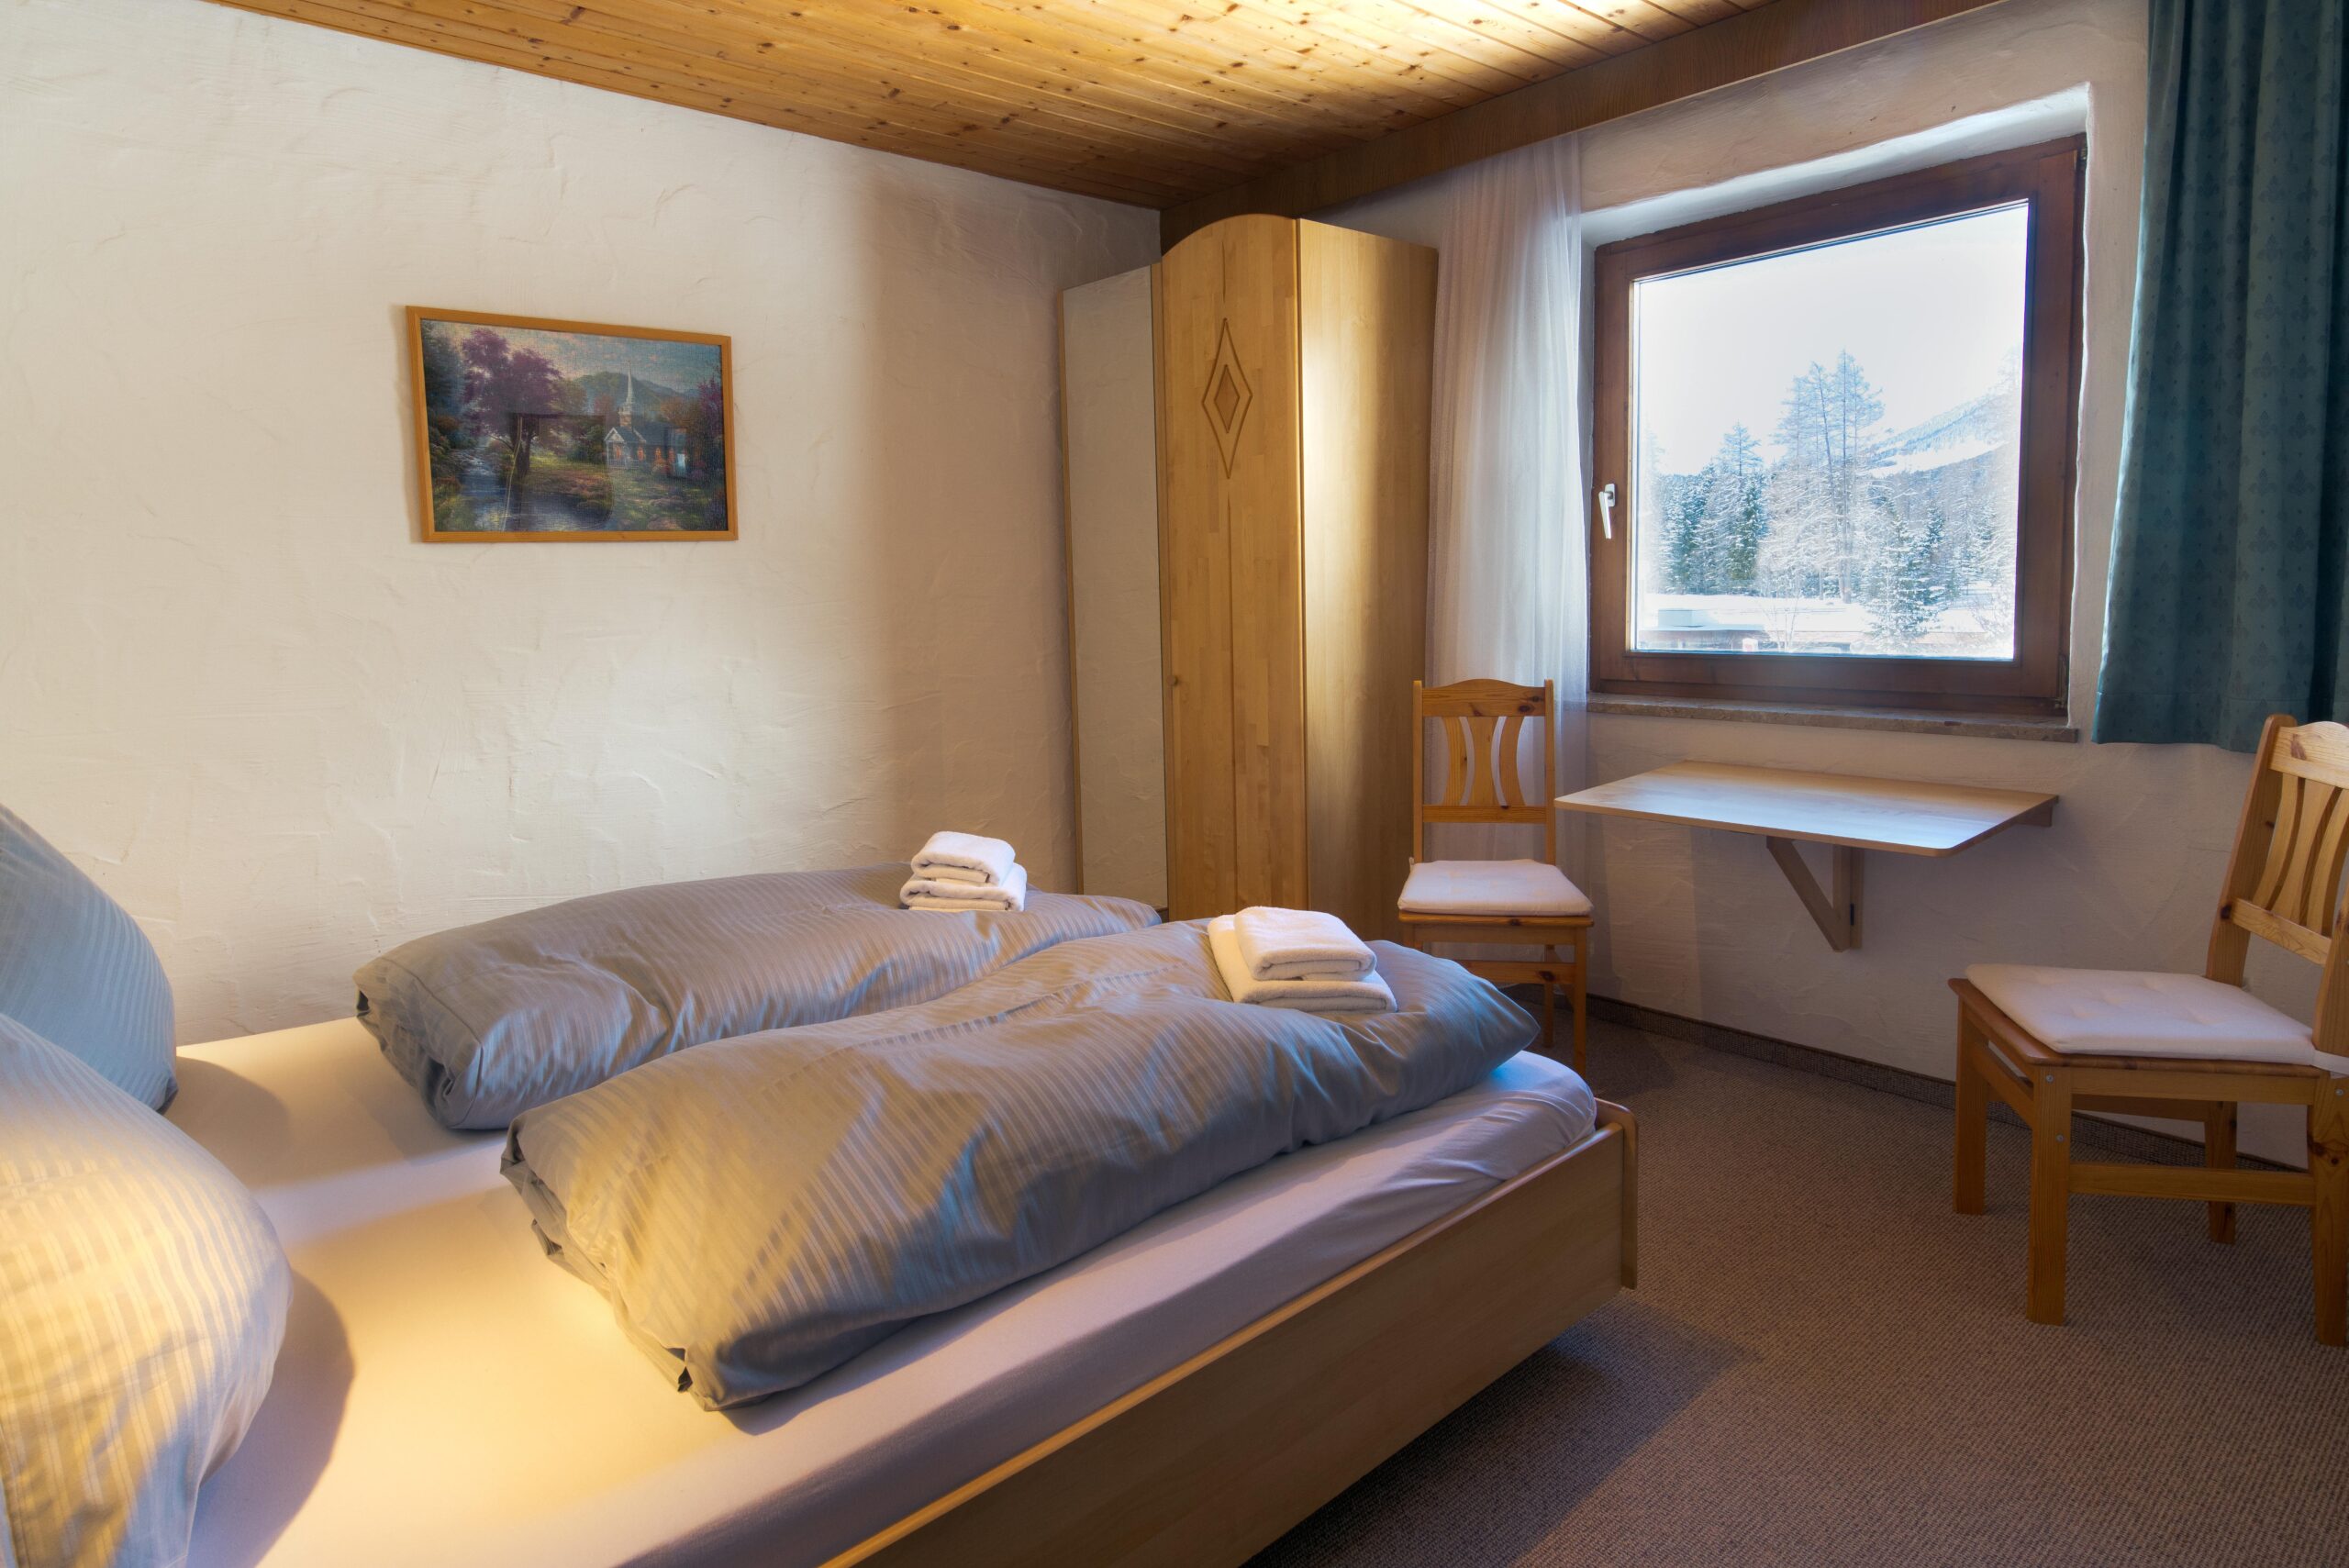 Appartementenhuis Ostbacher Stern in Tirol Oostenrijk (Slaapkamer type E) met 1 slaapkamer met douche.